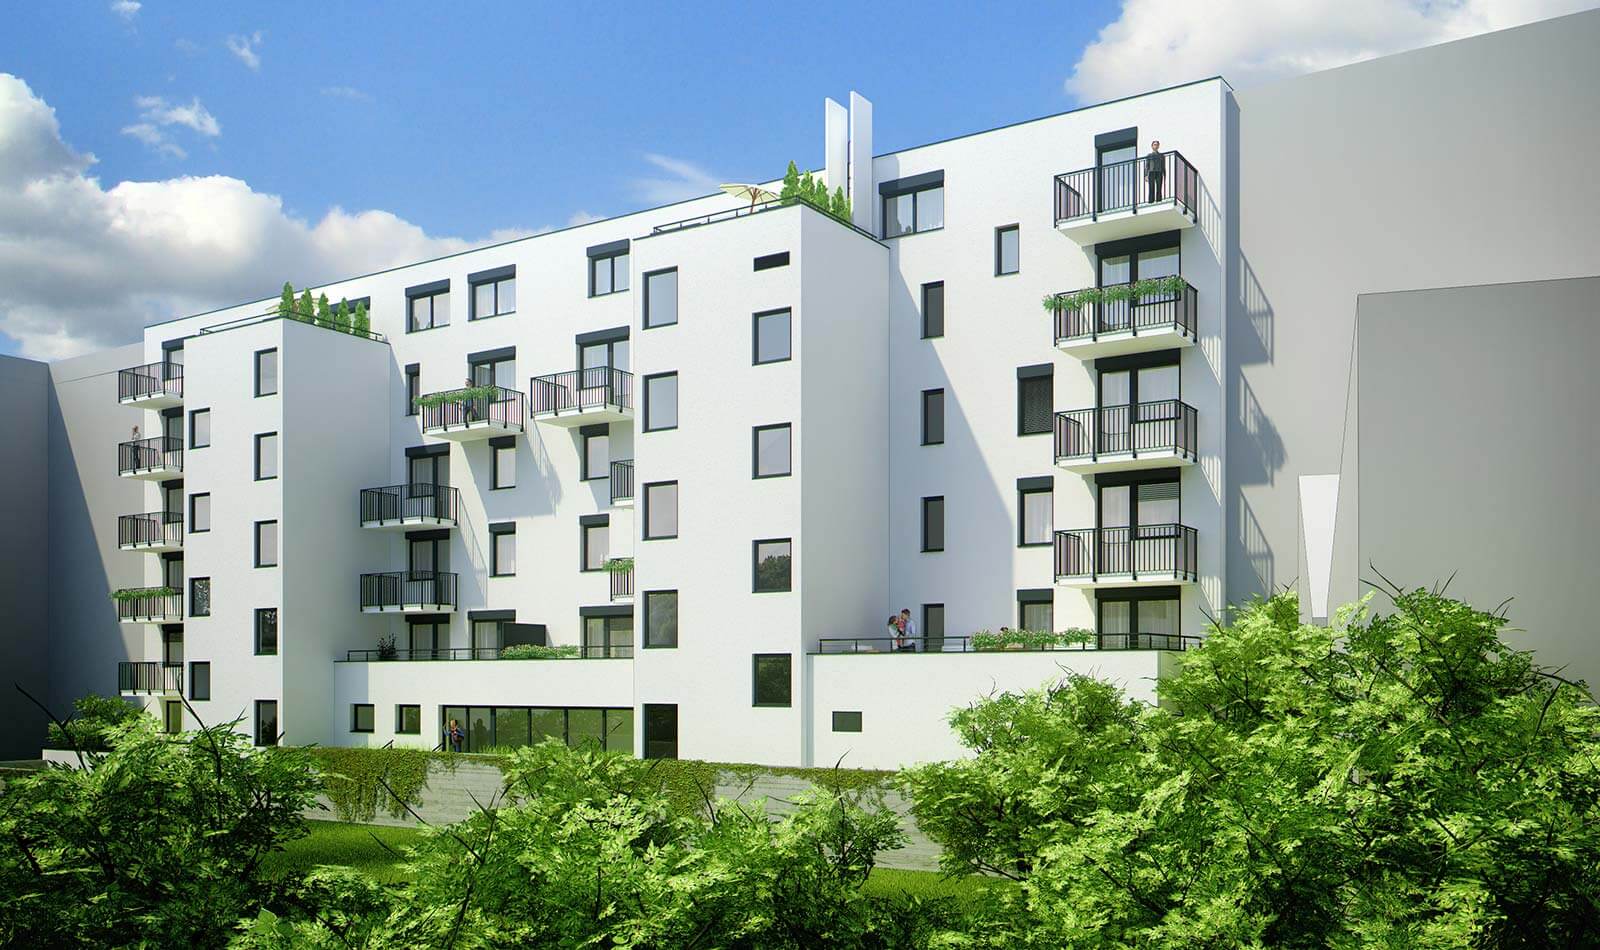 Predané: Novostavba 4 izbový byt, širšie centrum v Bratislave, Beskydská ulica, 90,37m2, balkón 4,5m2, štandard.-8